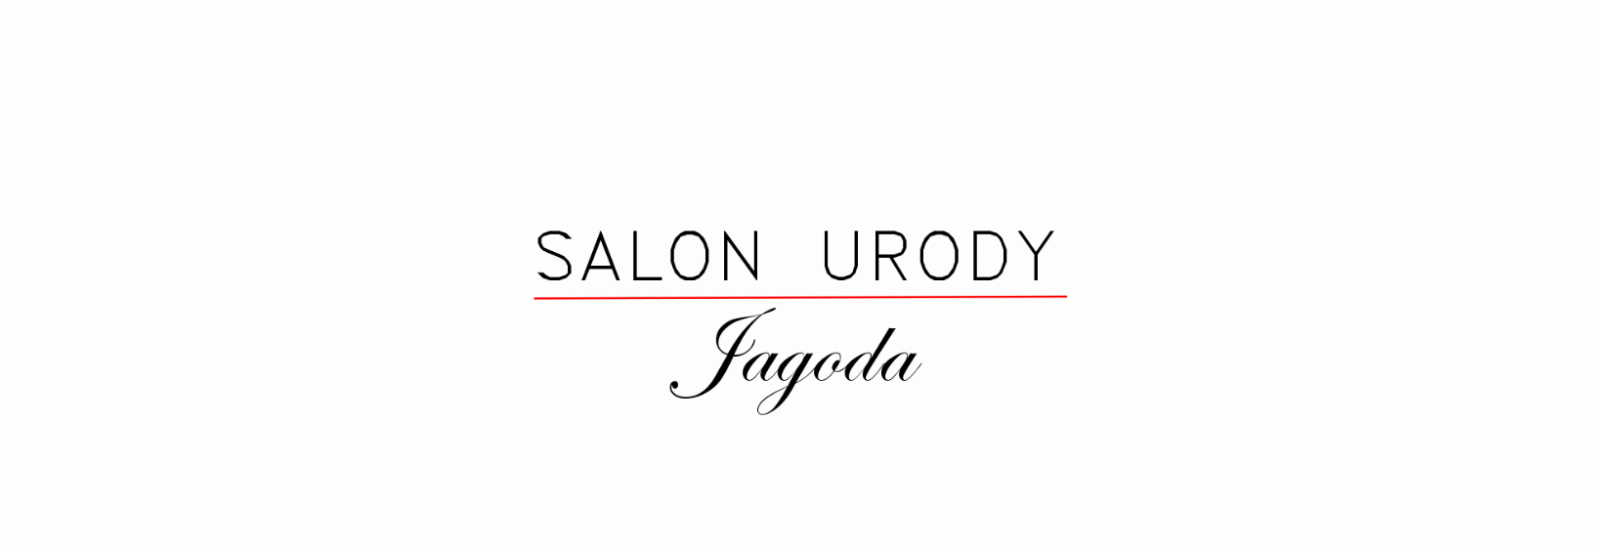 Salon Urody Jagoda